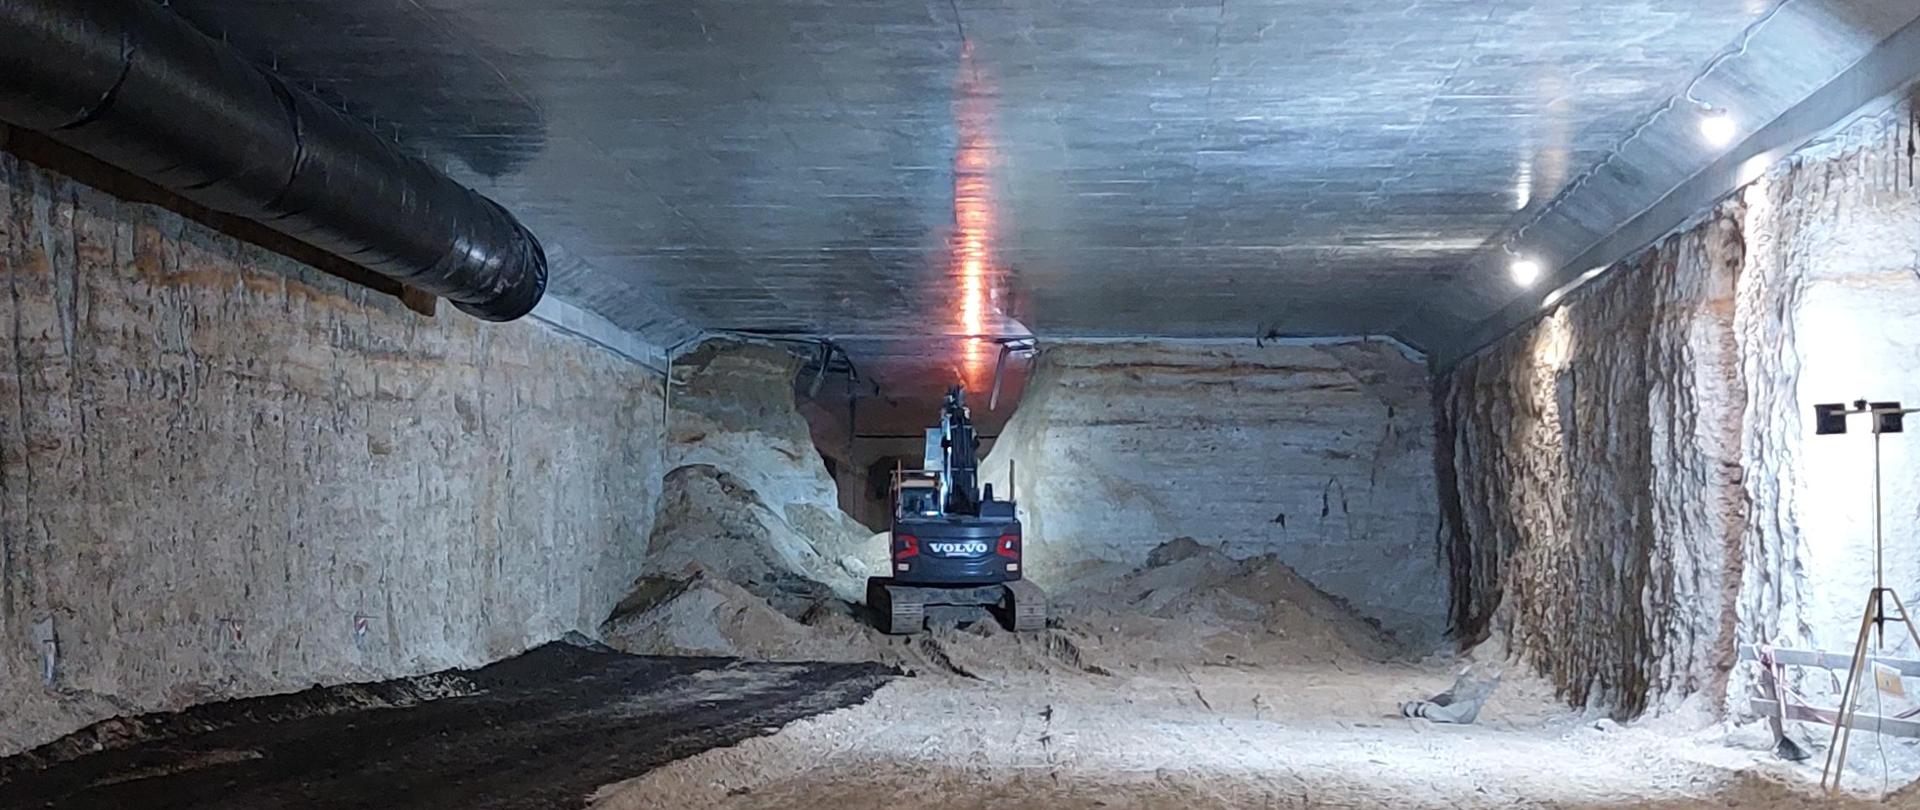 Zdjęcie wykonane we wnętrzu budowanego tunelu na S52, południowej obwodnicy Krakowa. Maszyna budowlana (koparka) usuwa ostatnią warstwę ziemi aby połączyć obie wykopane części tunelu.